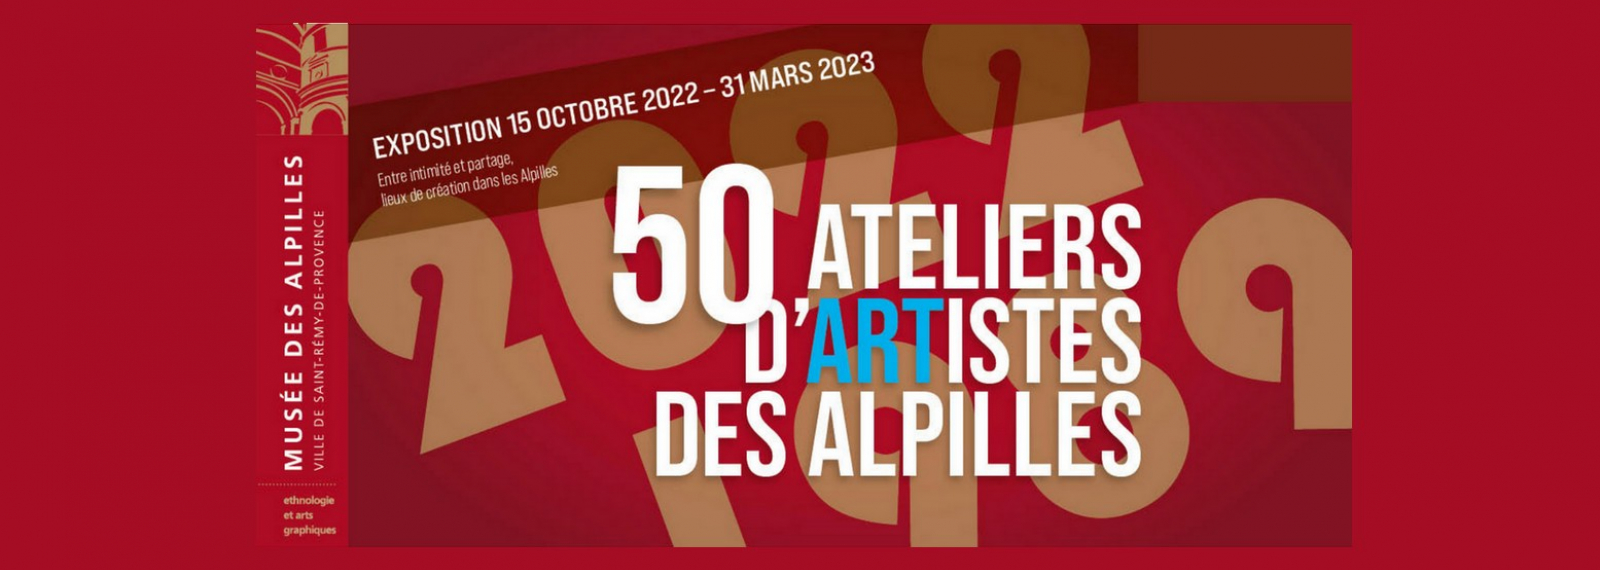 Ausstellung: 50 Künstlerateliers in den Alpilles